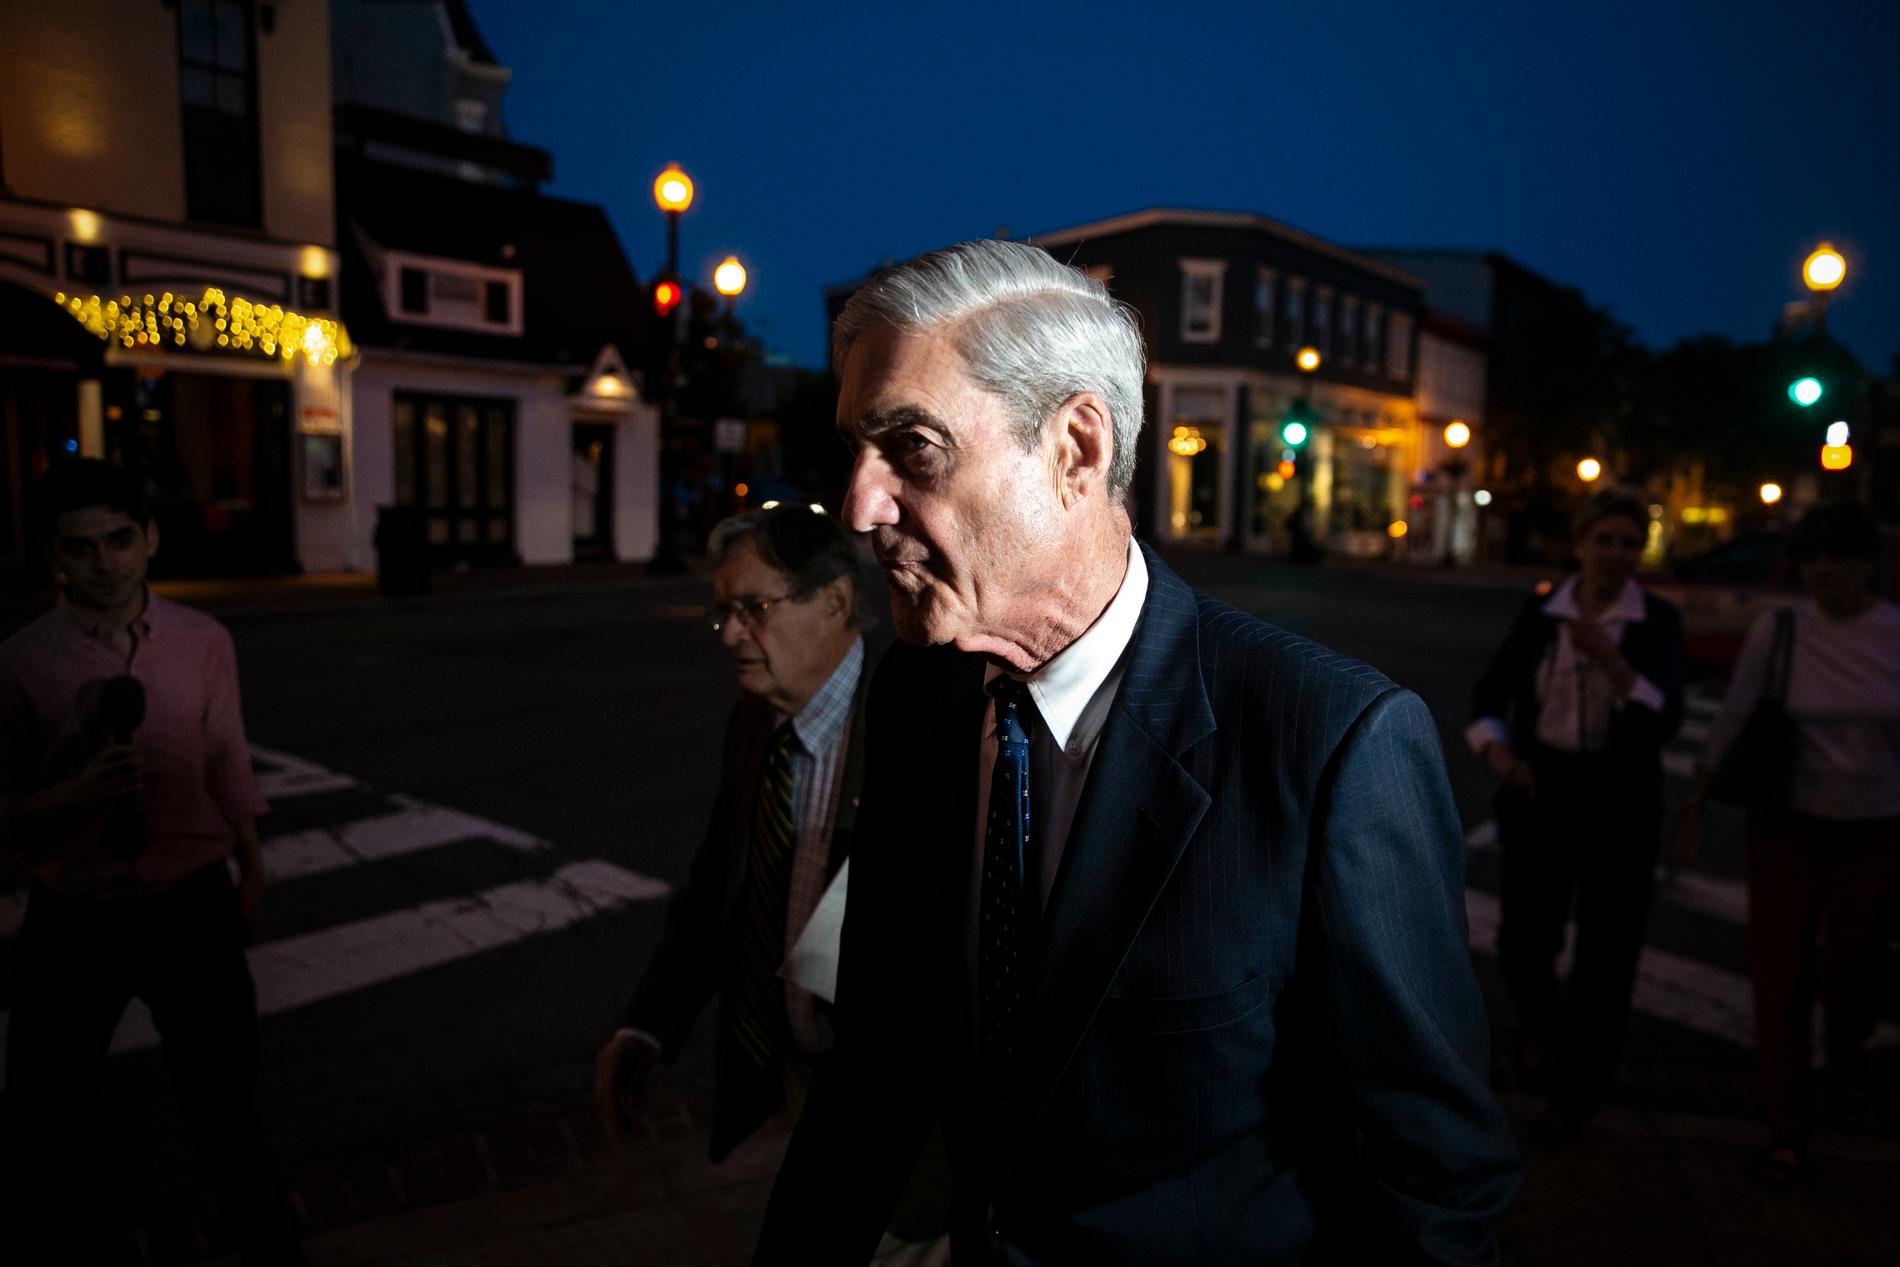 Den särskilde åklagaren Robert Mueller, som genomfört den så kallade Rysslandsutredningen.